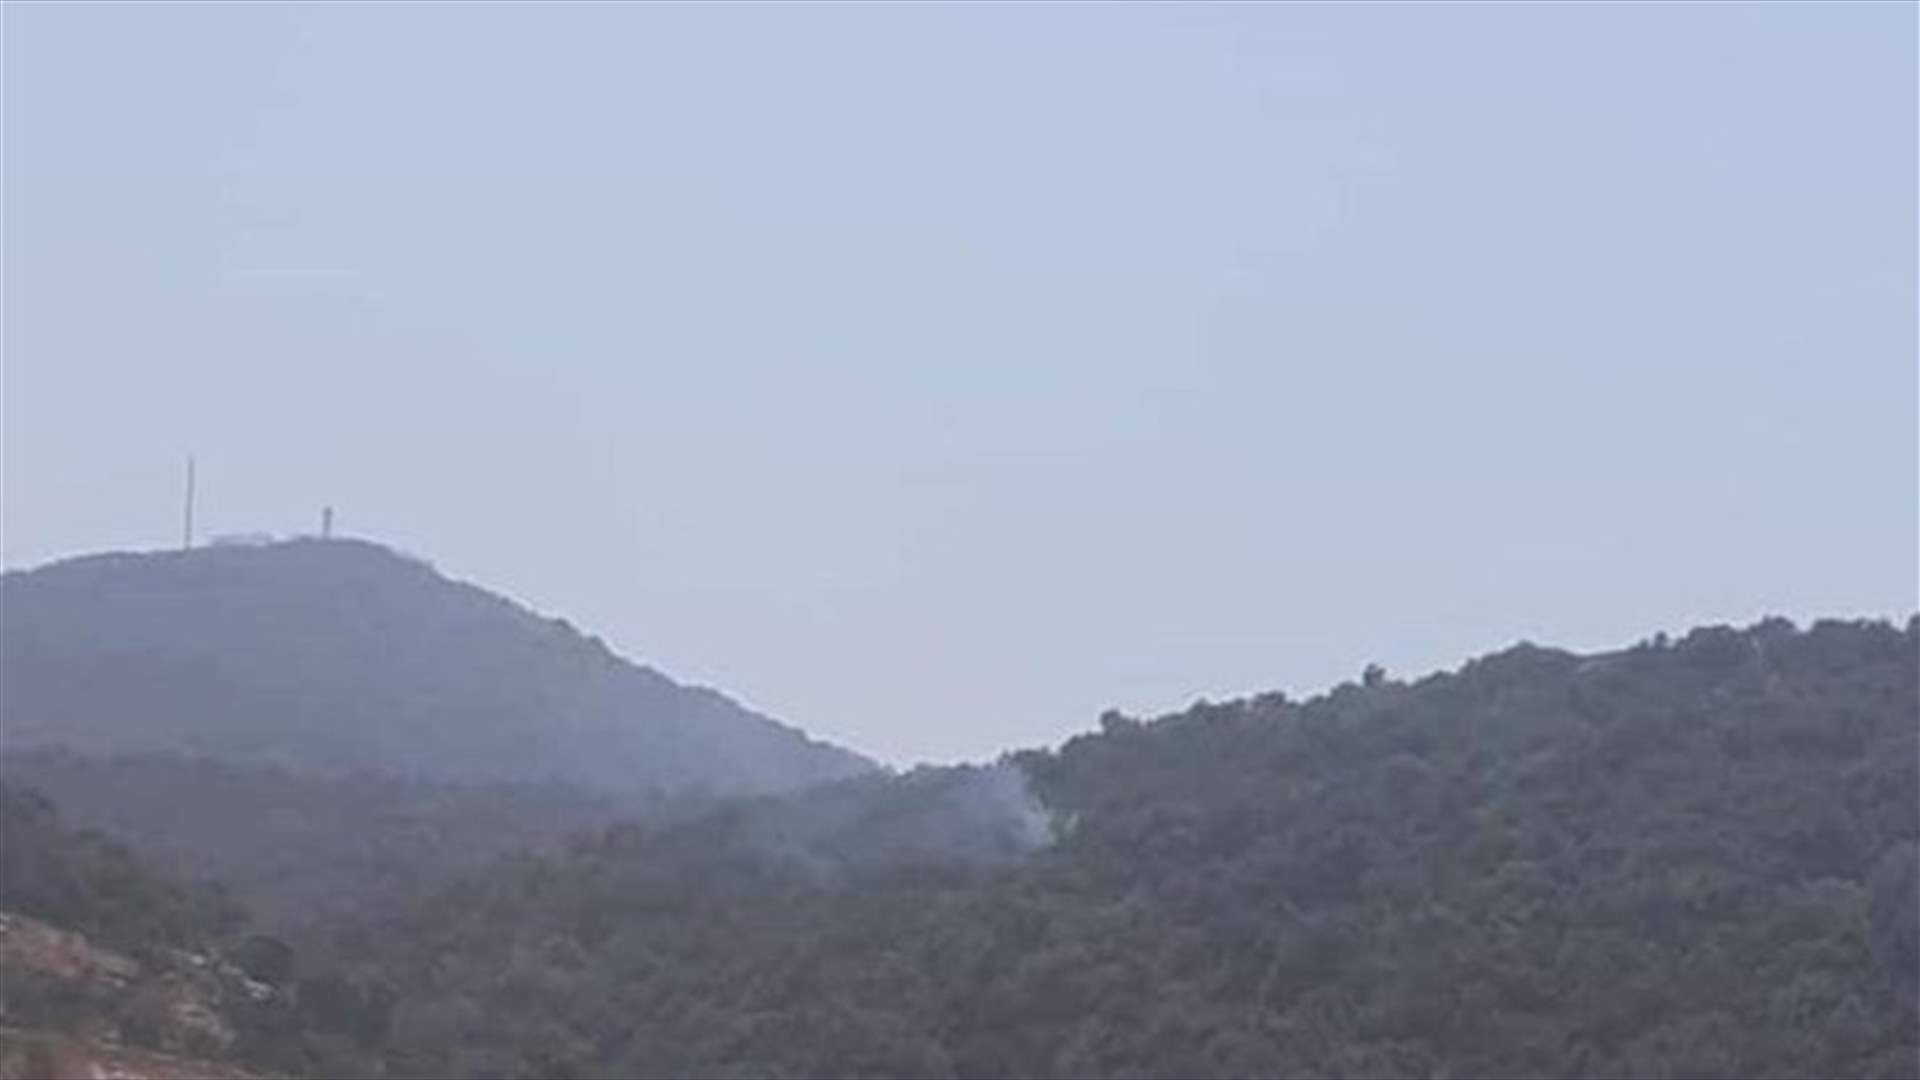 صورتان للقنابل الحارقة التي ألقتها طائرة مسيّرة إسرائيلية على الأحراج في مزرعة بسطرة اللبنانية